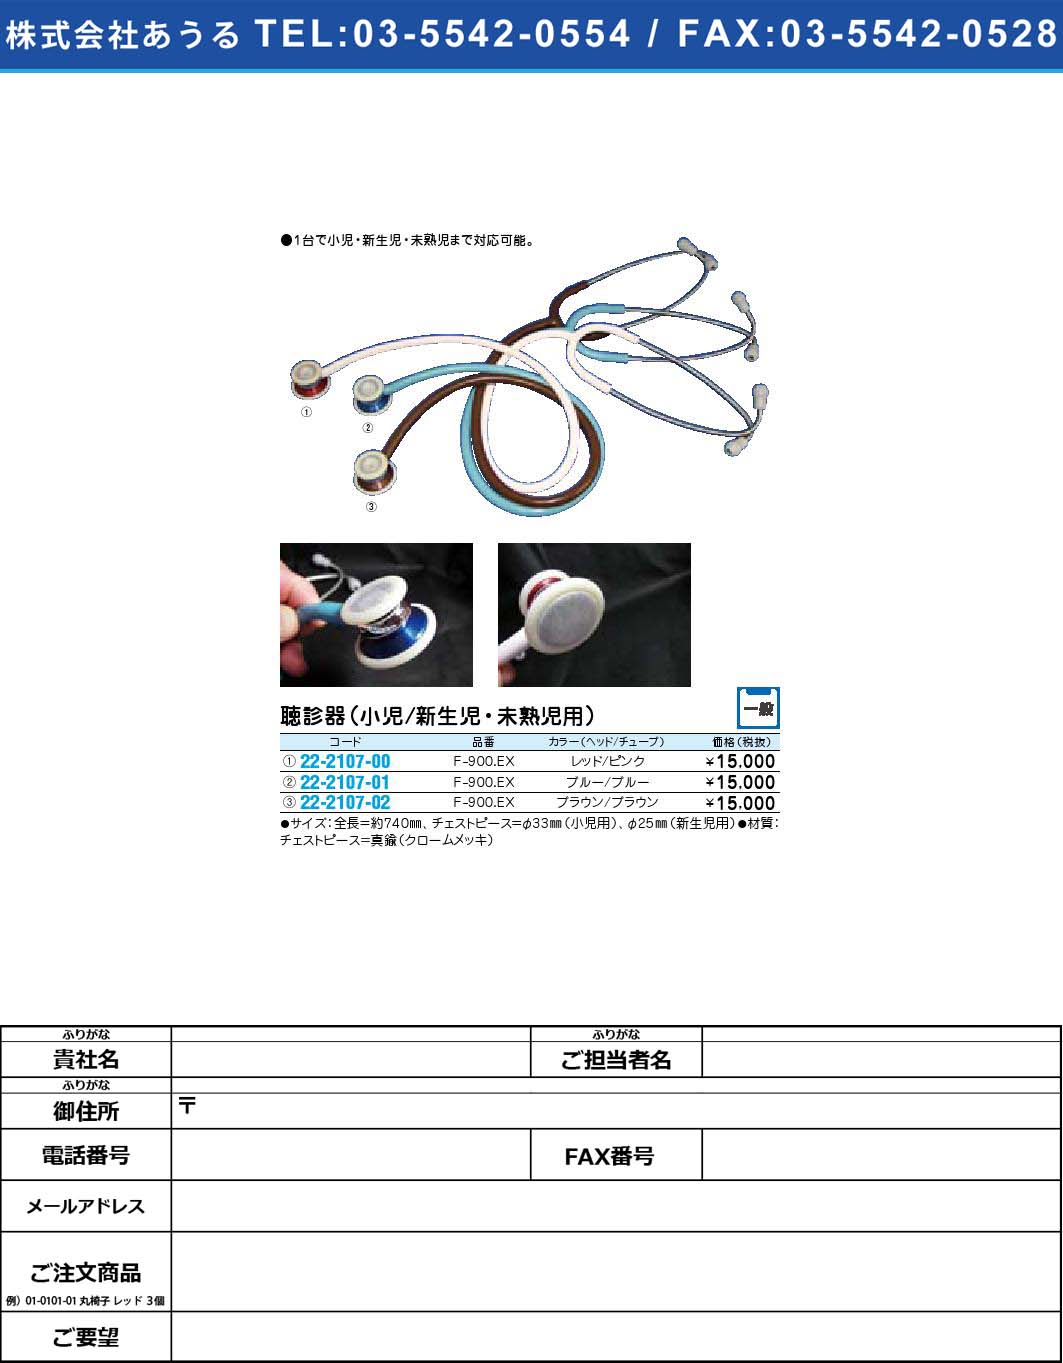 聴診器（小児／新生児・未熟児用） F-900.EX【1単位】(22-2107-02)